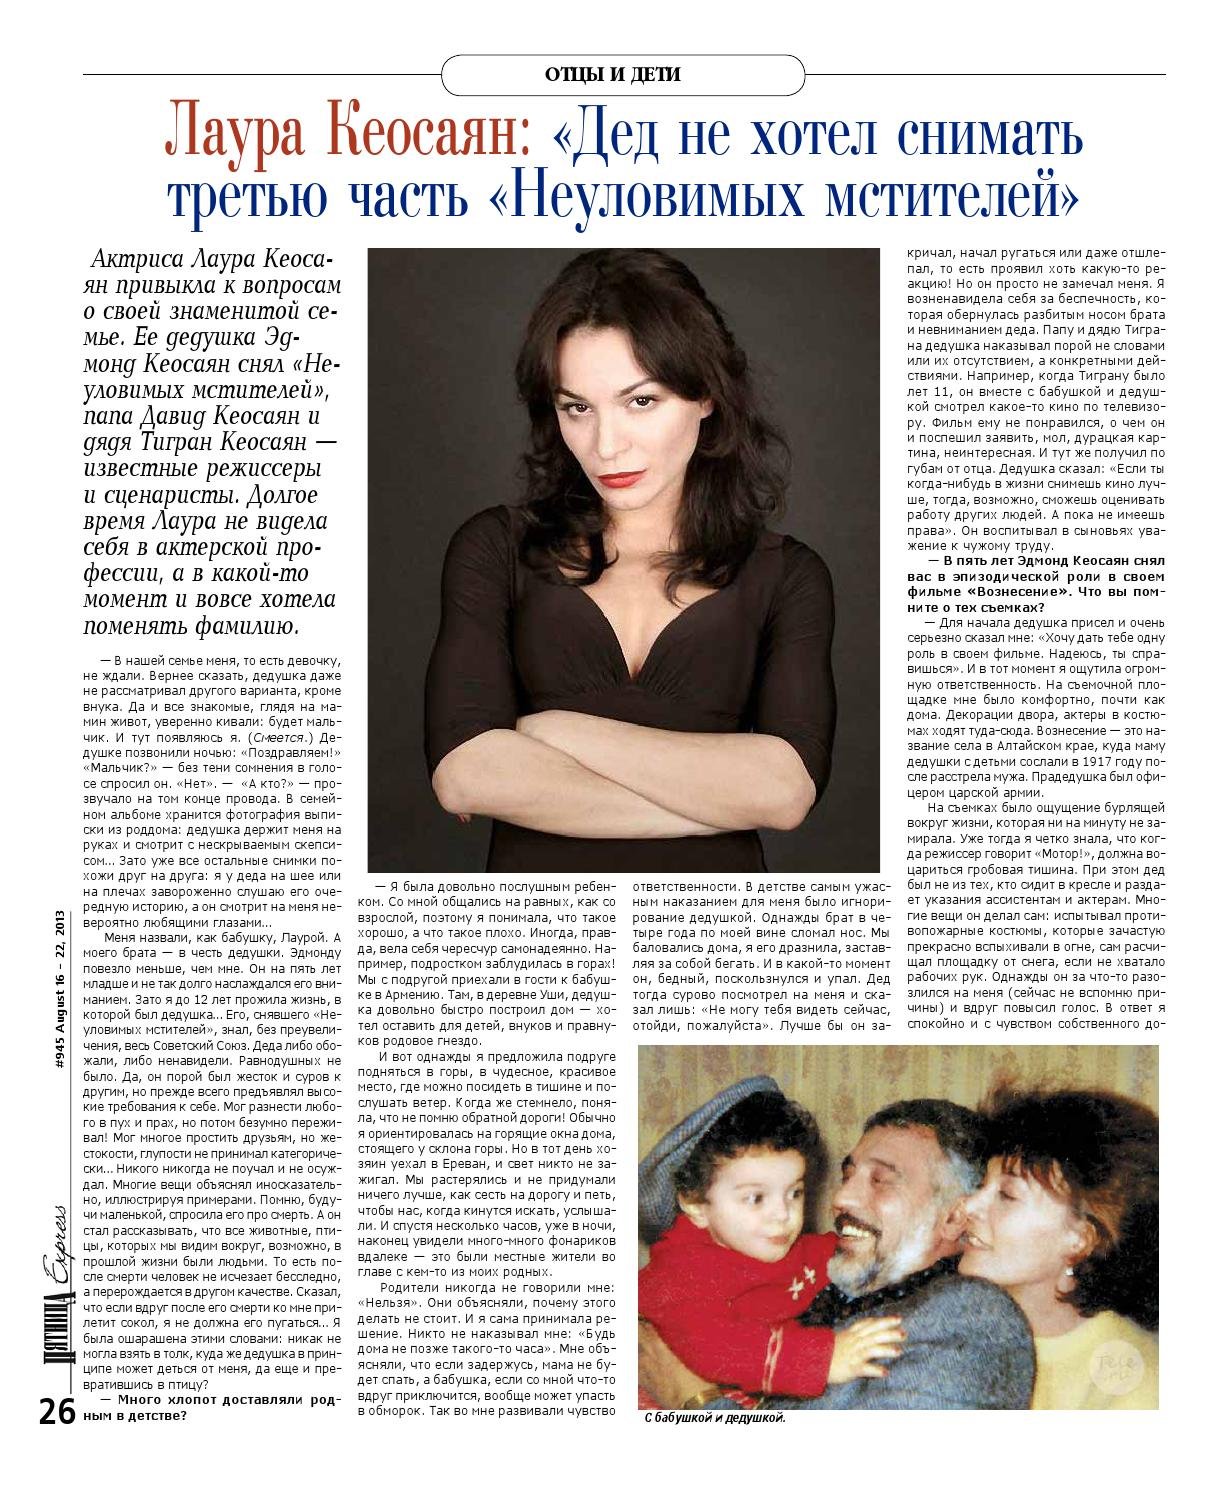 Лаура кеосаян биография актрисы, фото, ее муж и дети 2021